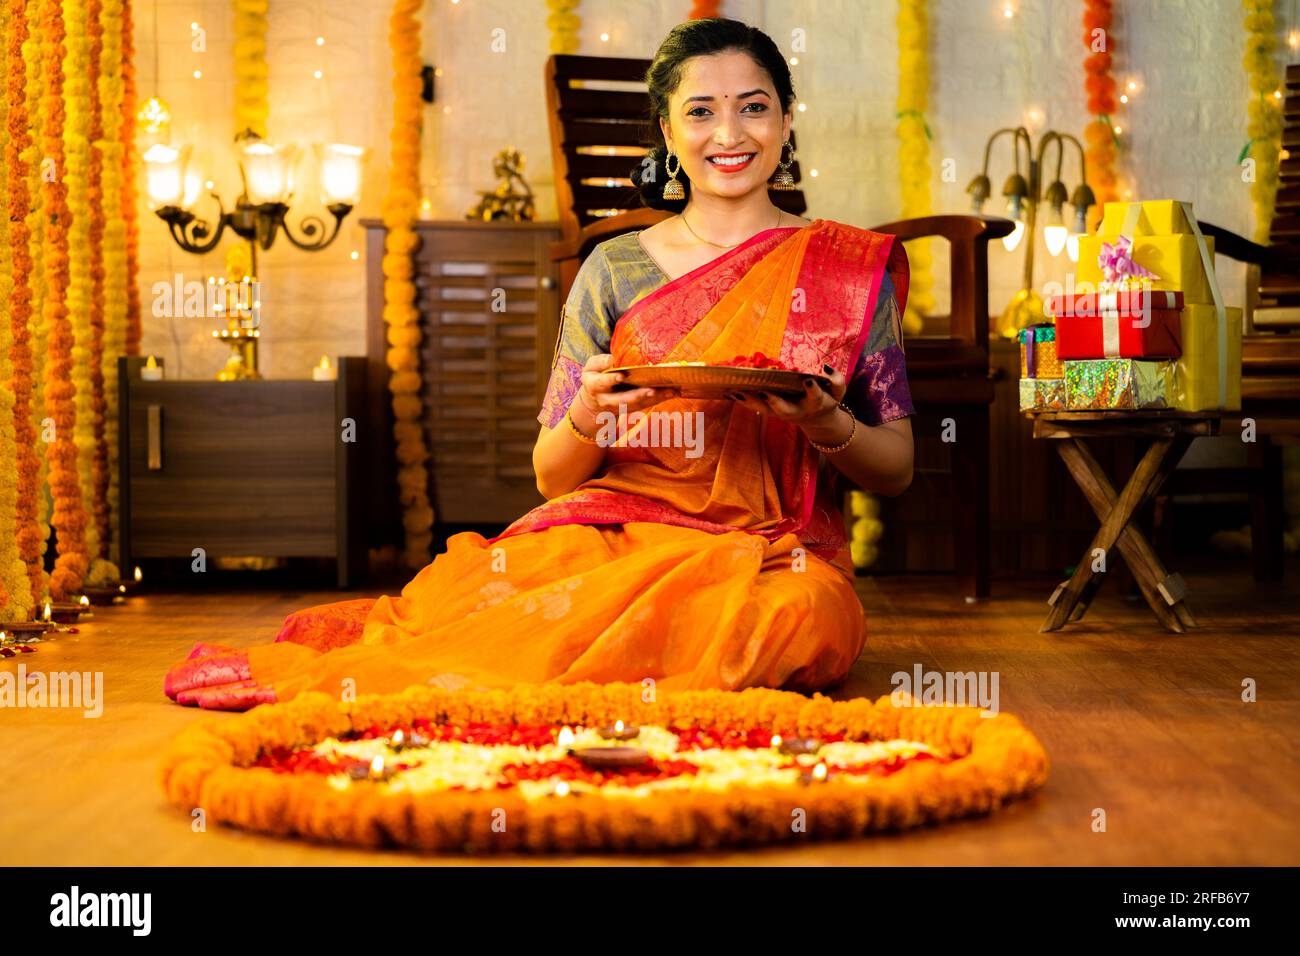 Ampia ripresa di una felice ragazza indiana sorridente che tiene un piatto di fiori guardando la macchina fotografica davanti alla decorazione del pavimento - concetto di celebrazione diwali Foto Stock